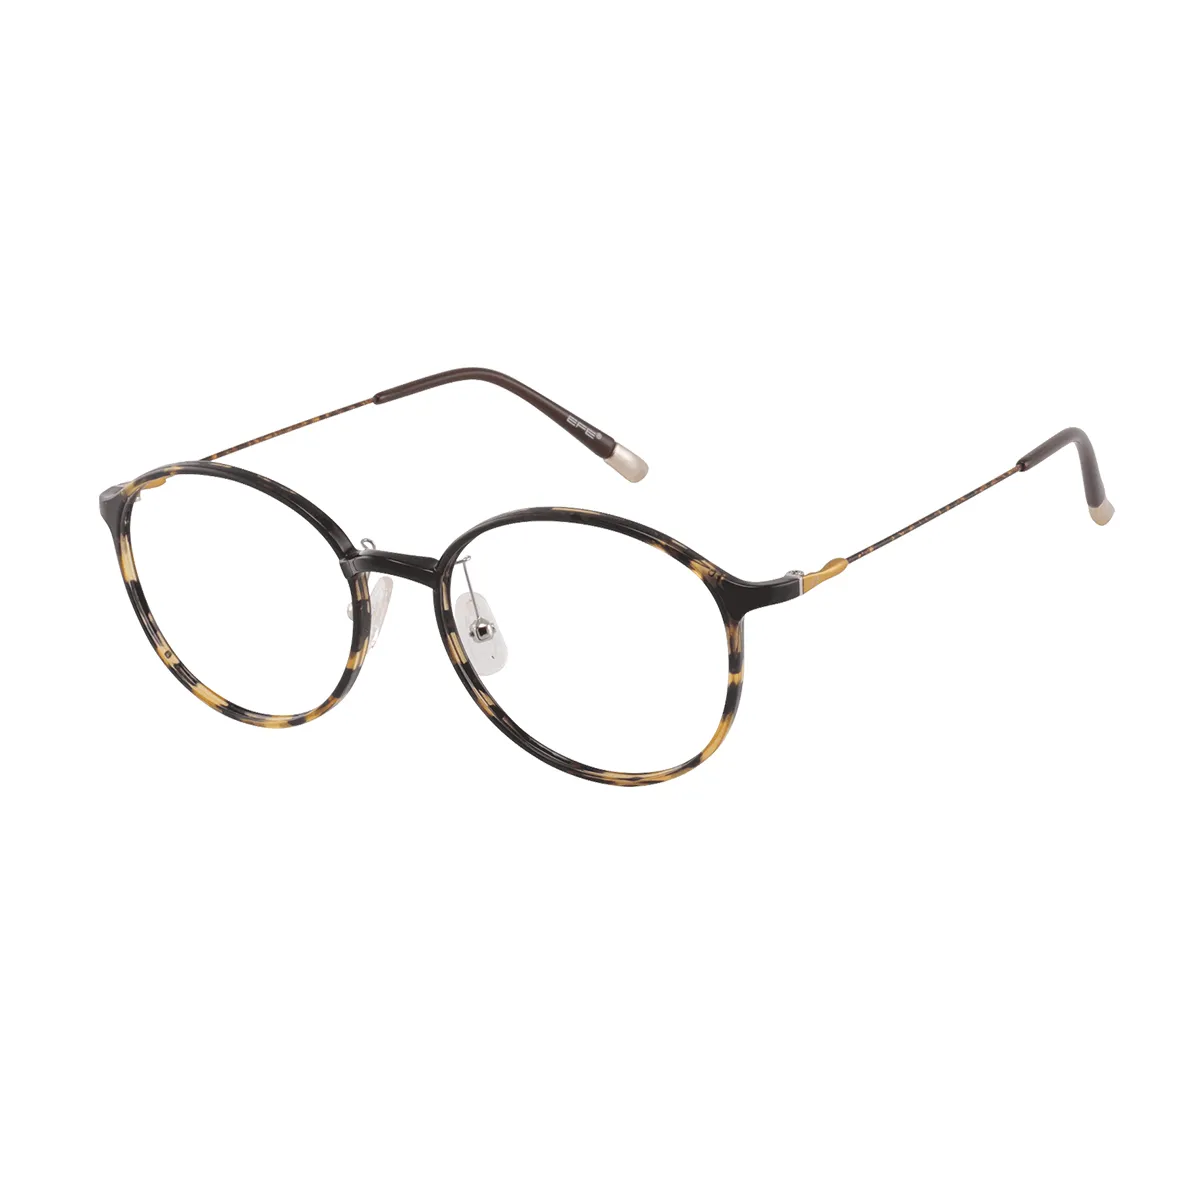 Kearns - Round Tortoiseshell Glasses for Men & Women - EFE